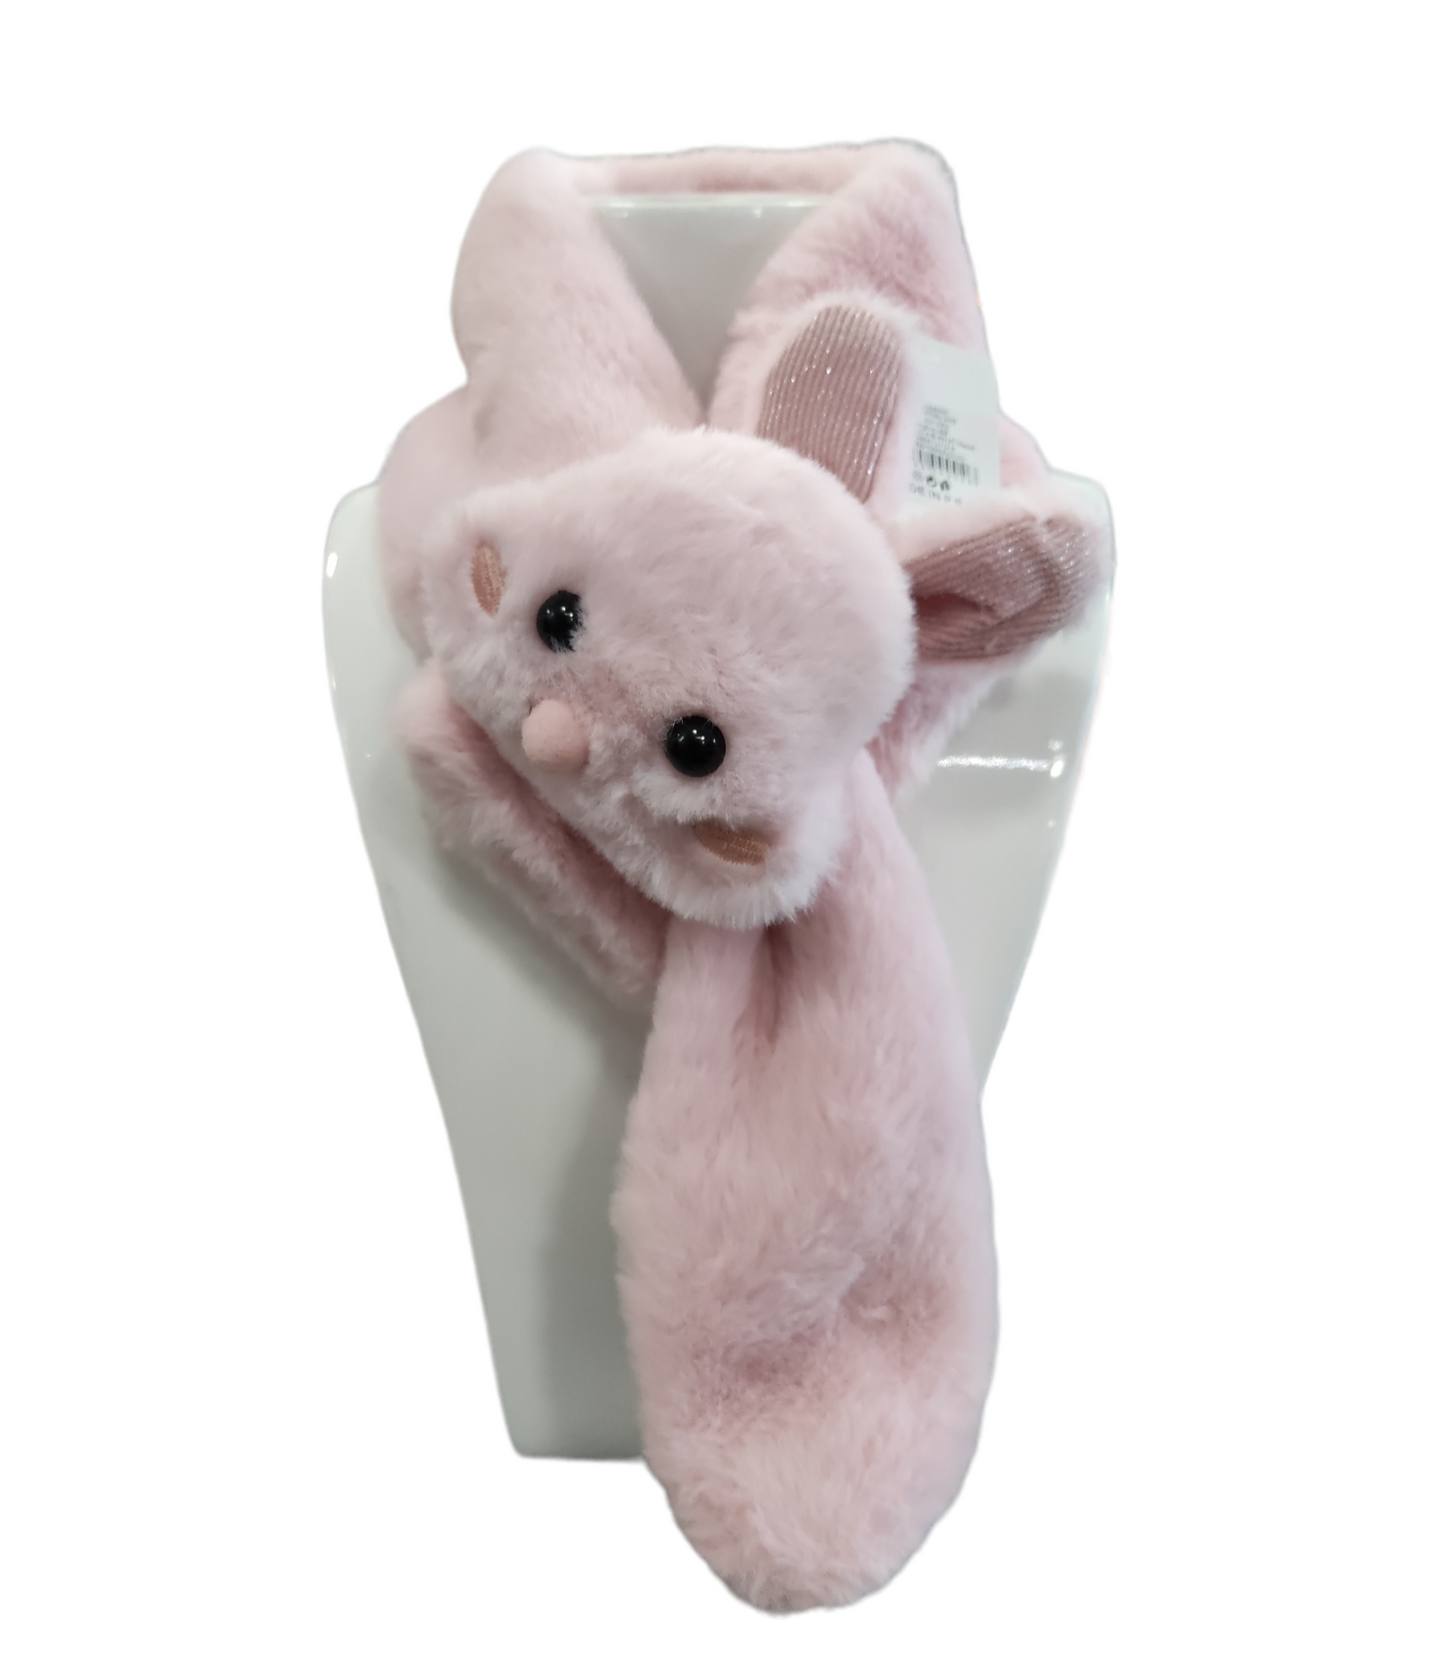 Sciarpa in Eco Pelliccia con Coniglietto per Bambina